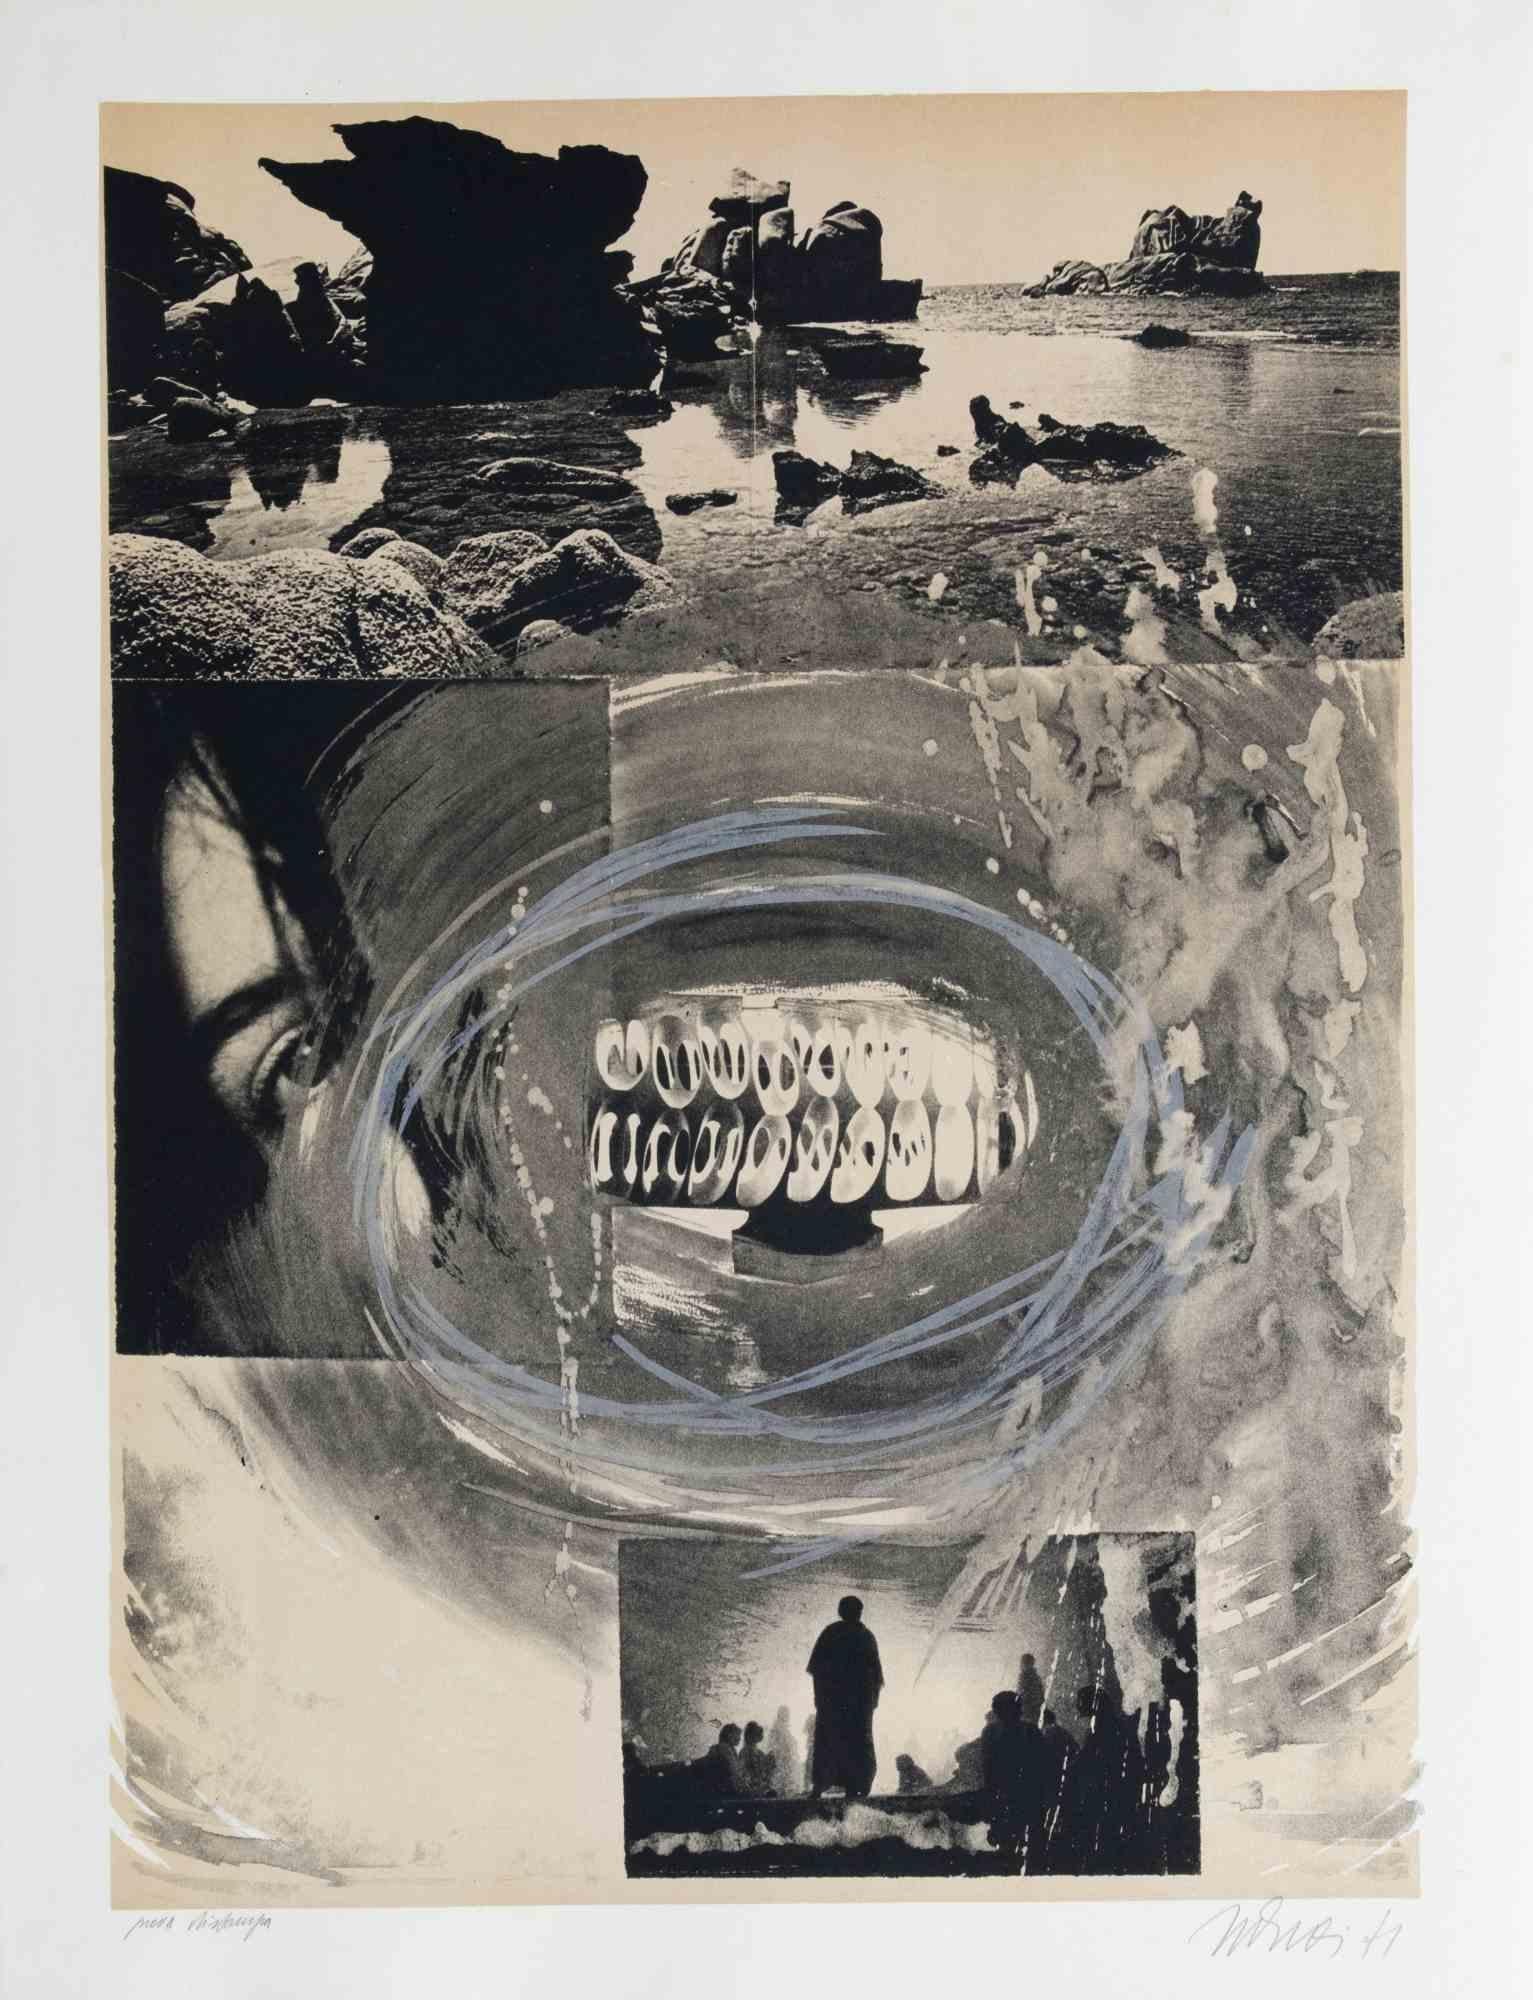 The Mouth of the Time ist ein zeitgenössisches Kunstwerk, das 1971 von Nani Tedeschi realisiert wurde.

Schwarz-Weiß-Lithographie.

Am unteren Rand handsigniert und datiert.

Künstlerischer Beweis